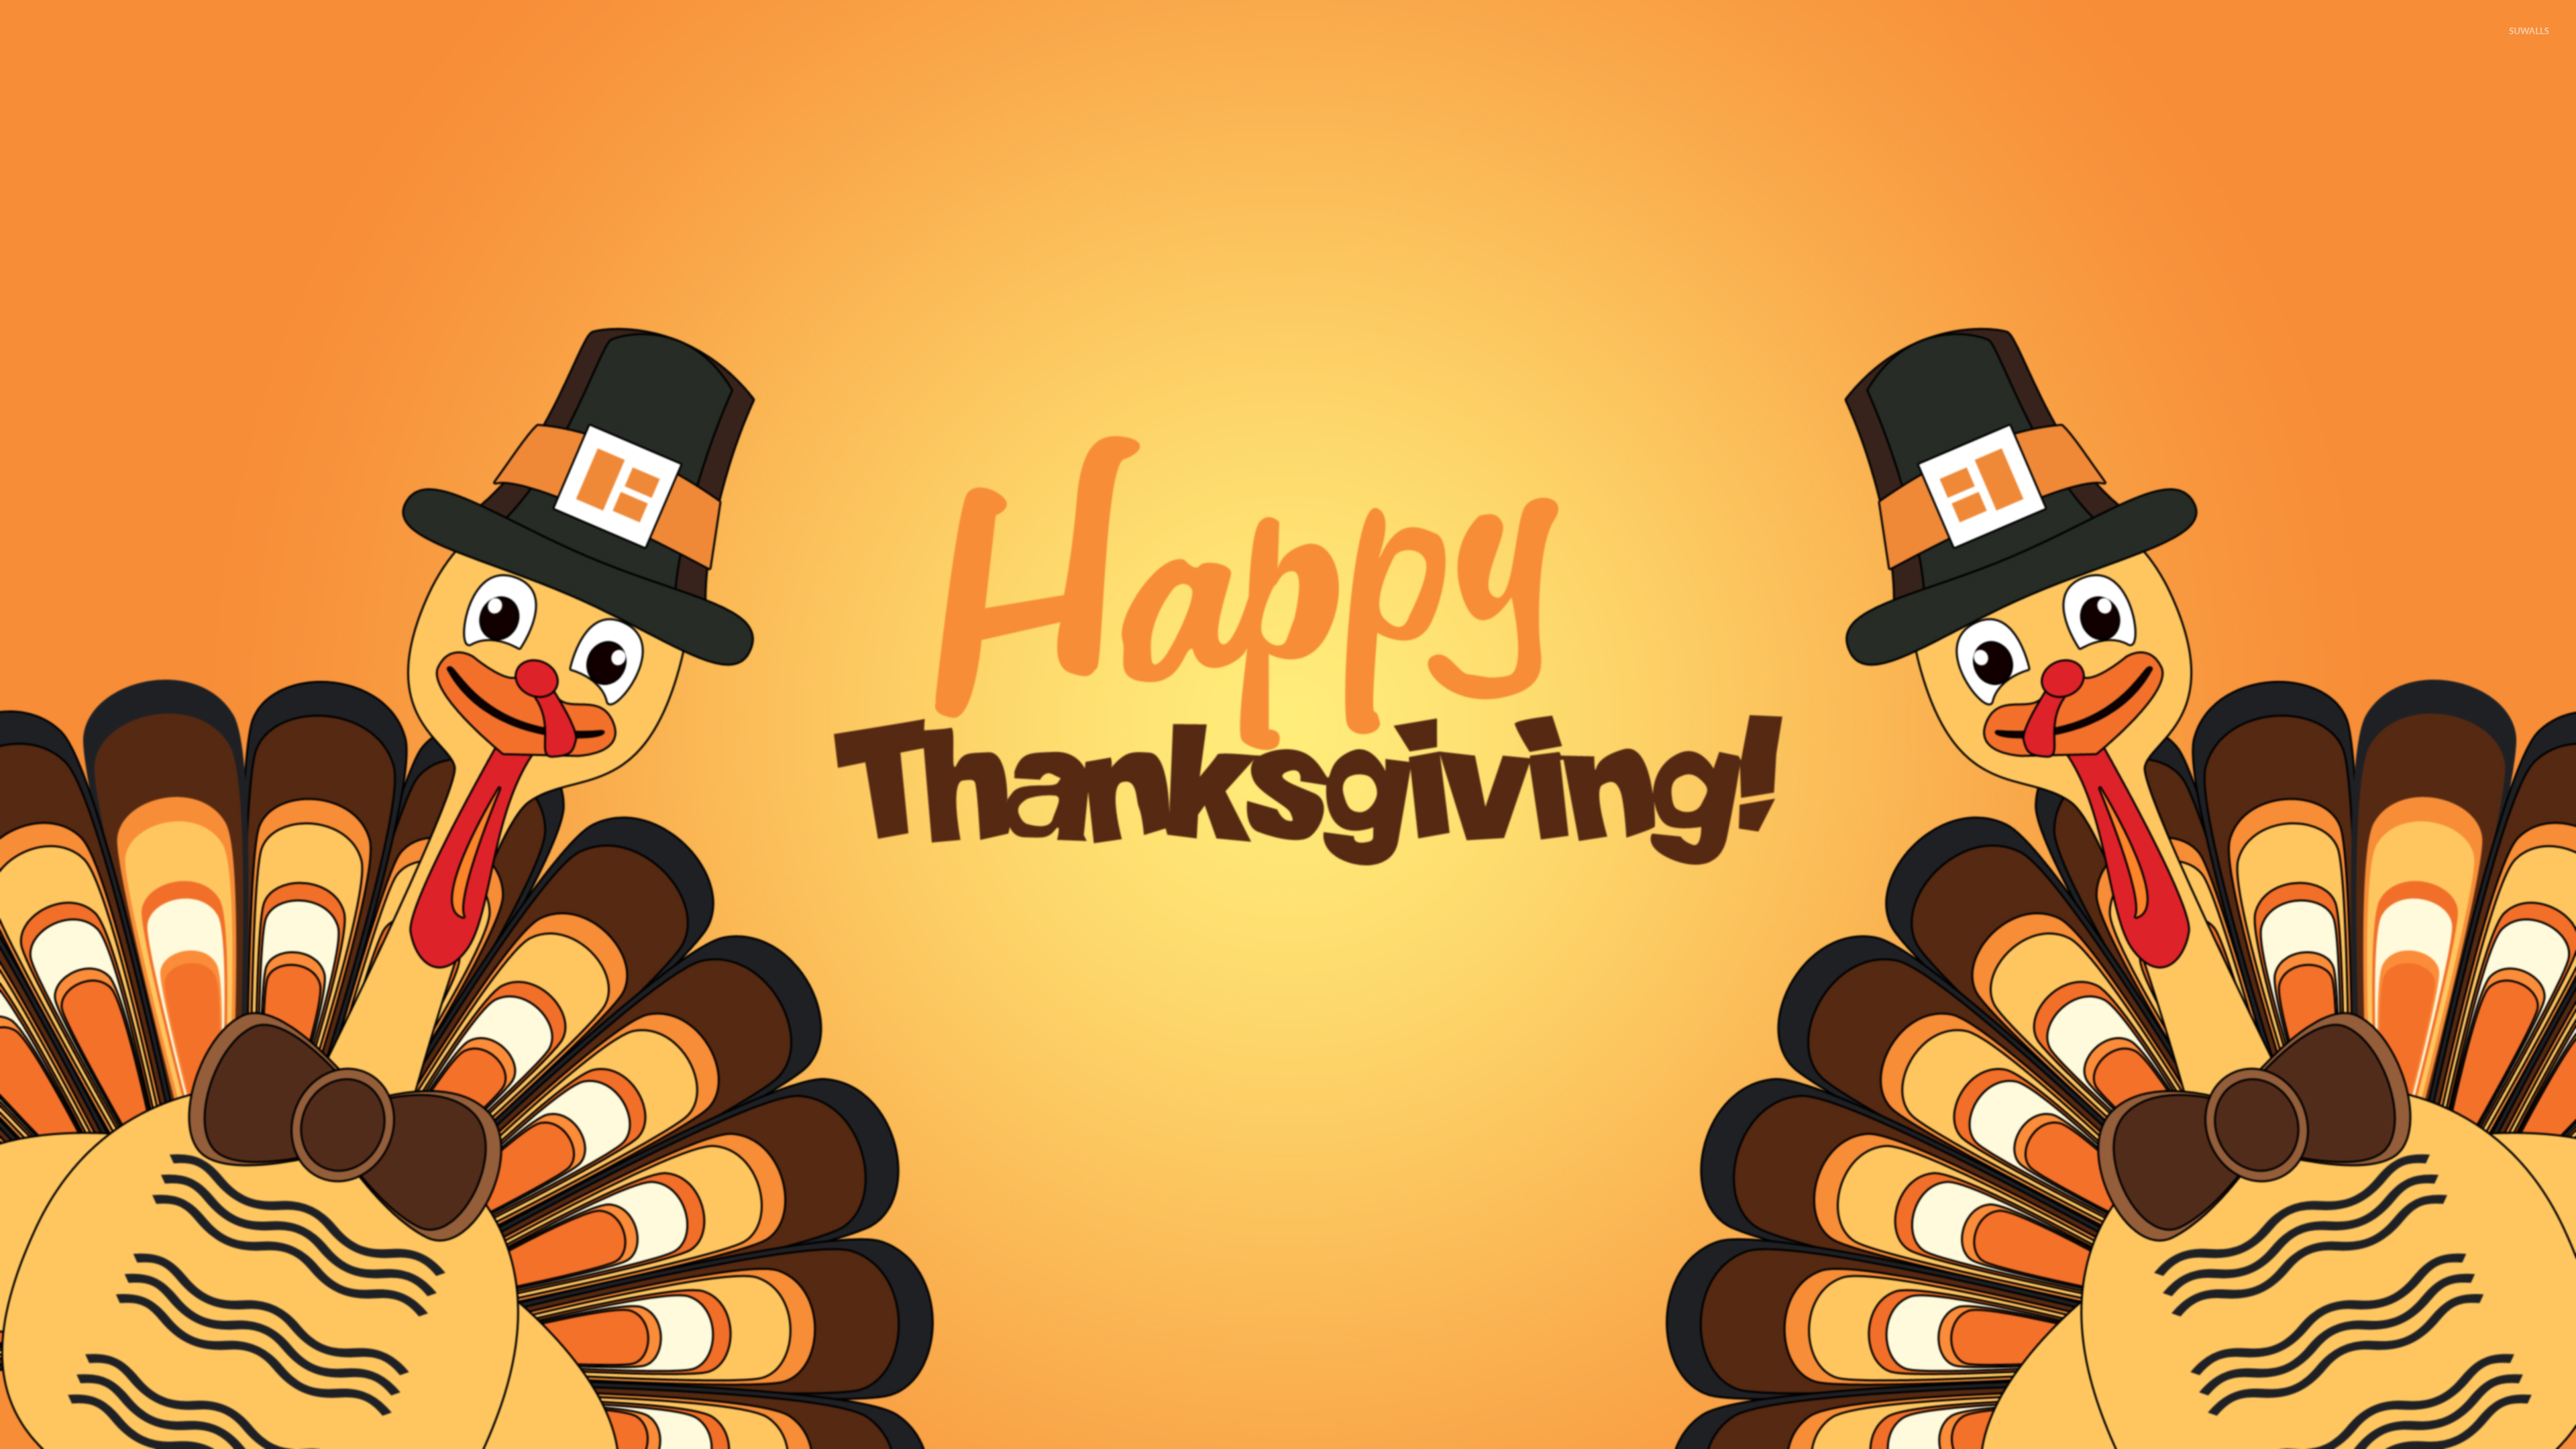 Happy Thanksgiving turkeys wallpaper wallpaper